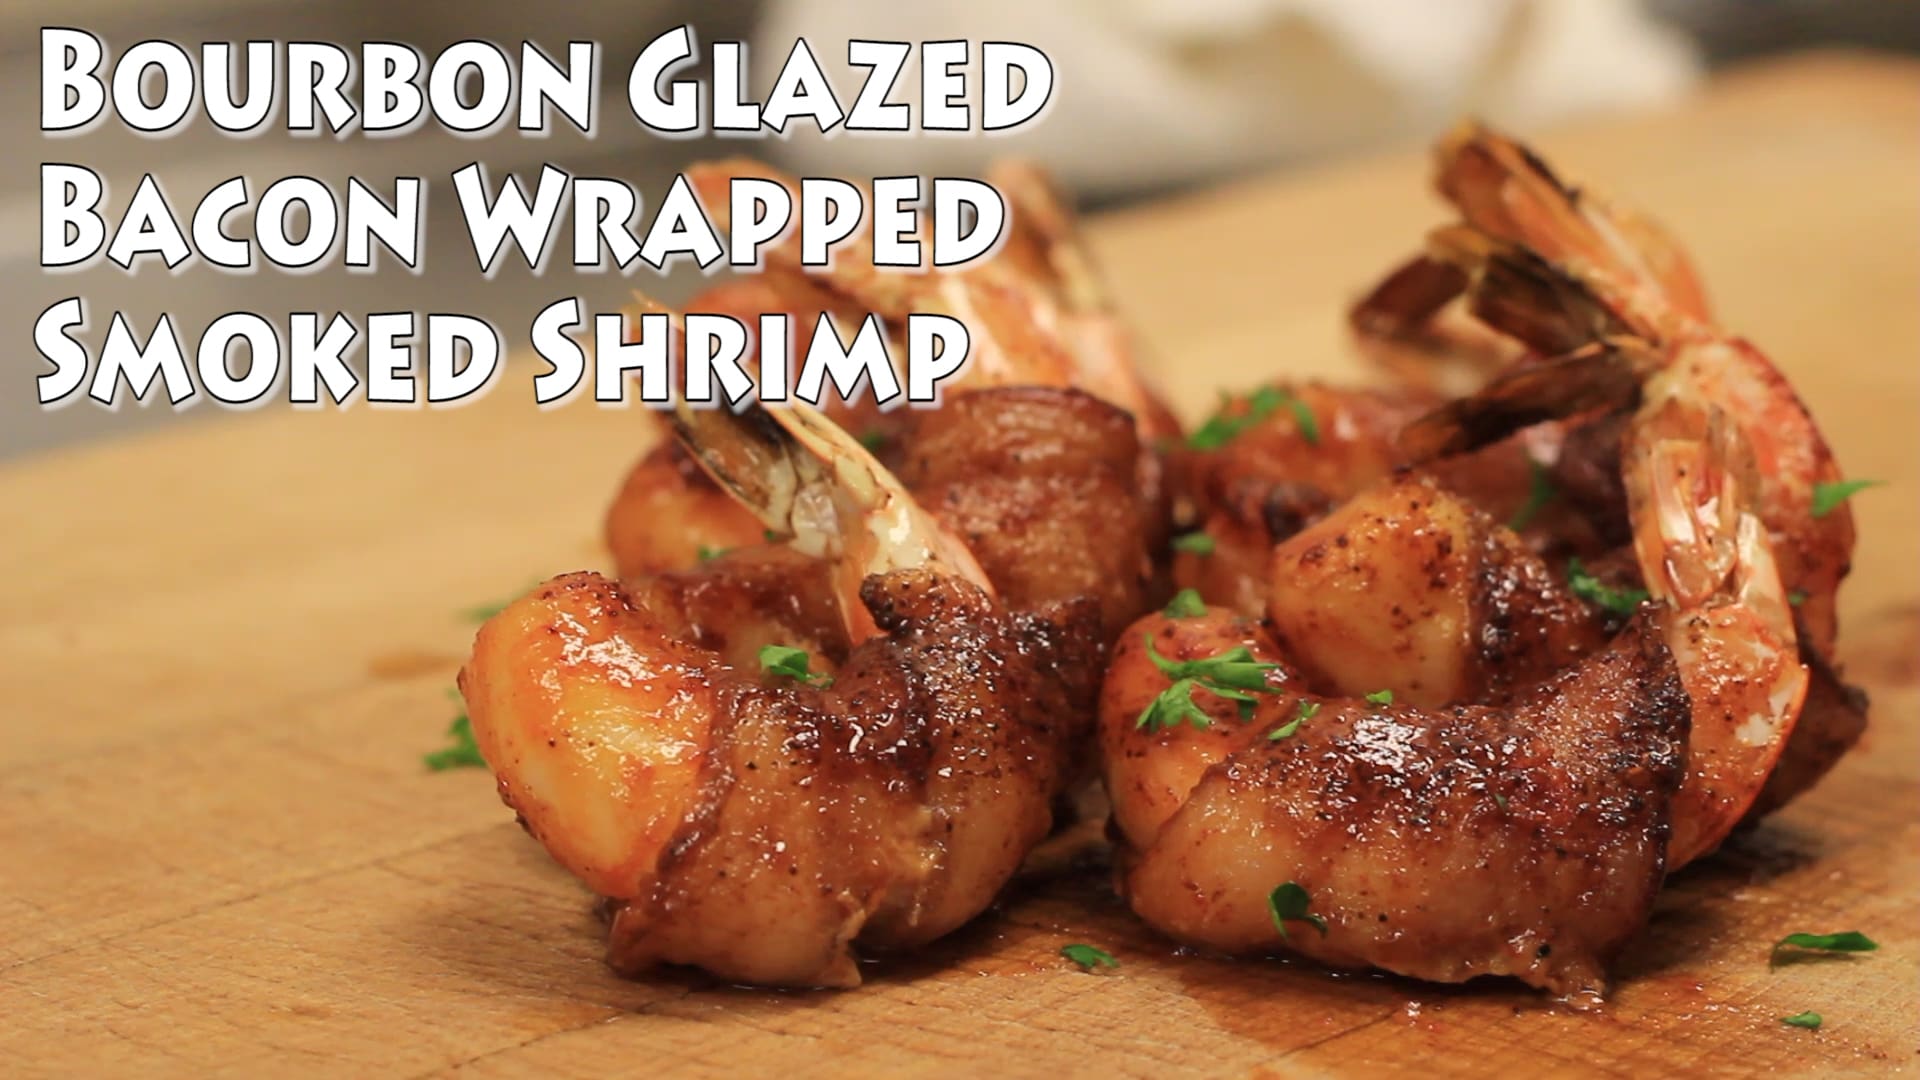 Bacon Wrapped Shrimp with a Bourbon Glaze